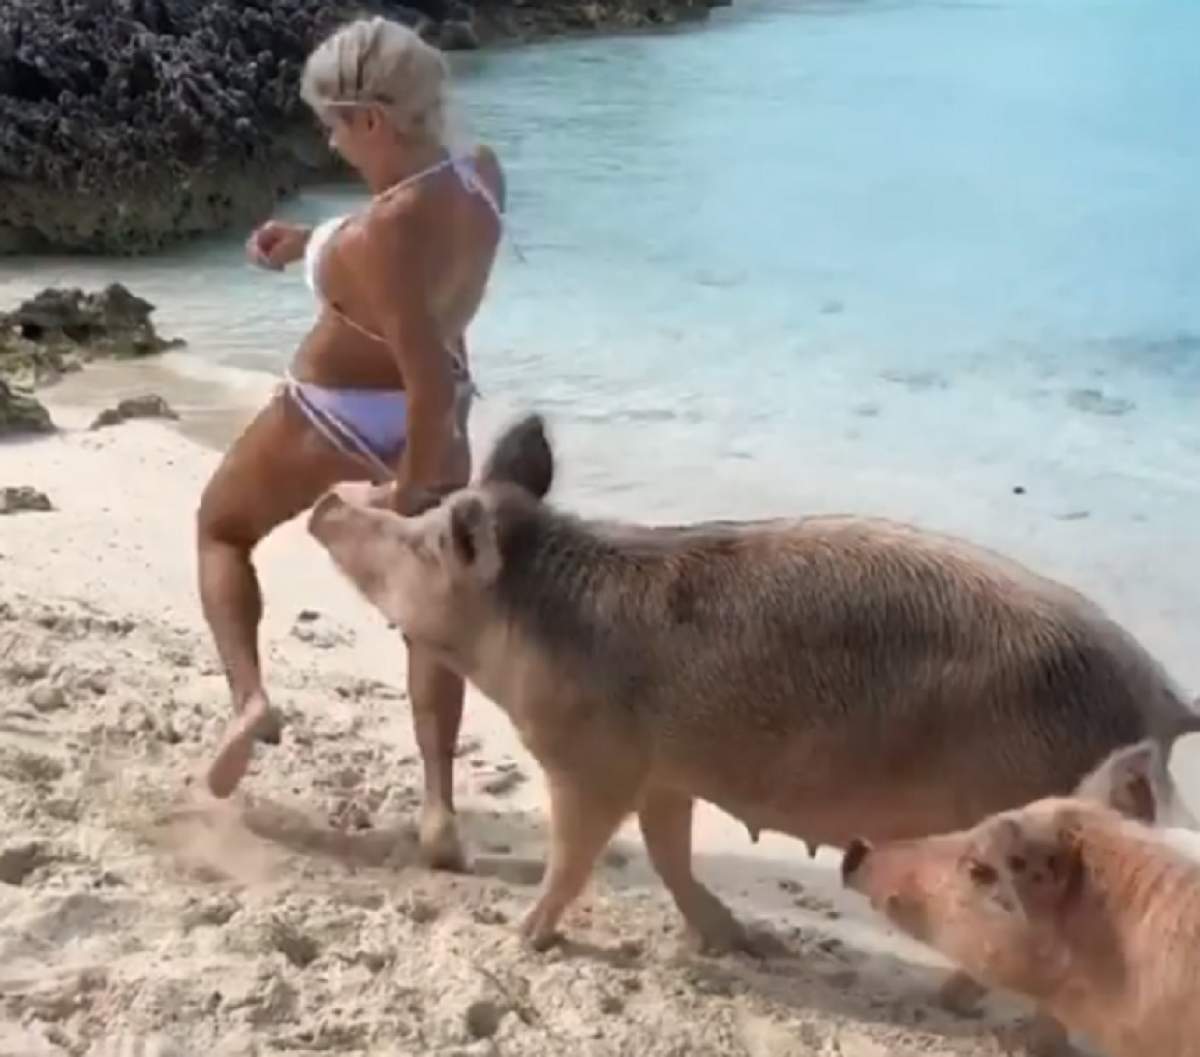 VIDEO / Momentul incredibil în care un model este mușcat de un porc într-o zonă intimă, pe o plajă exotică